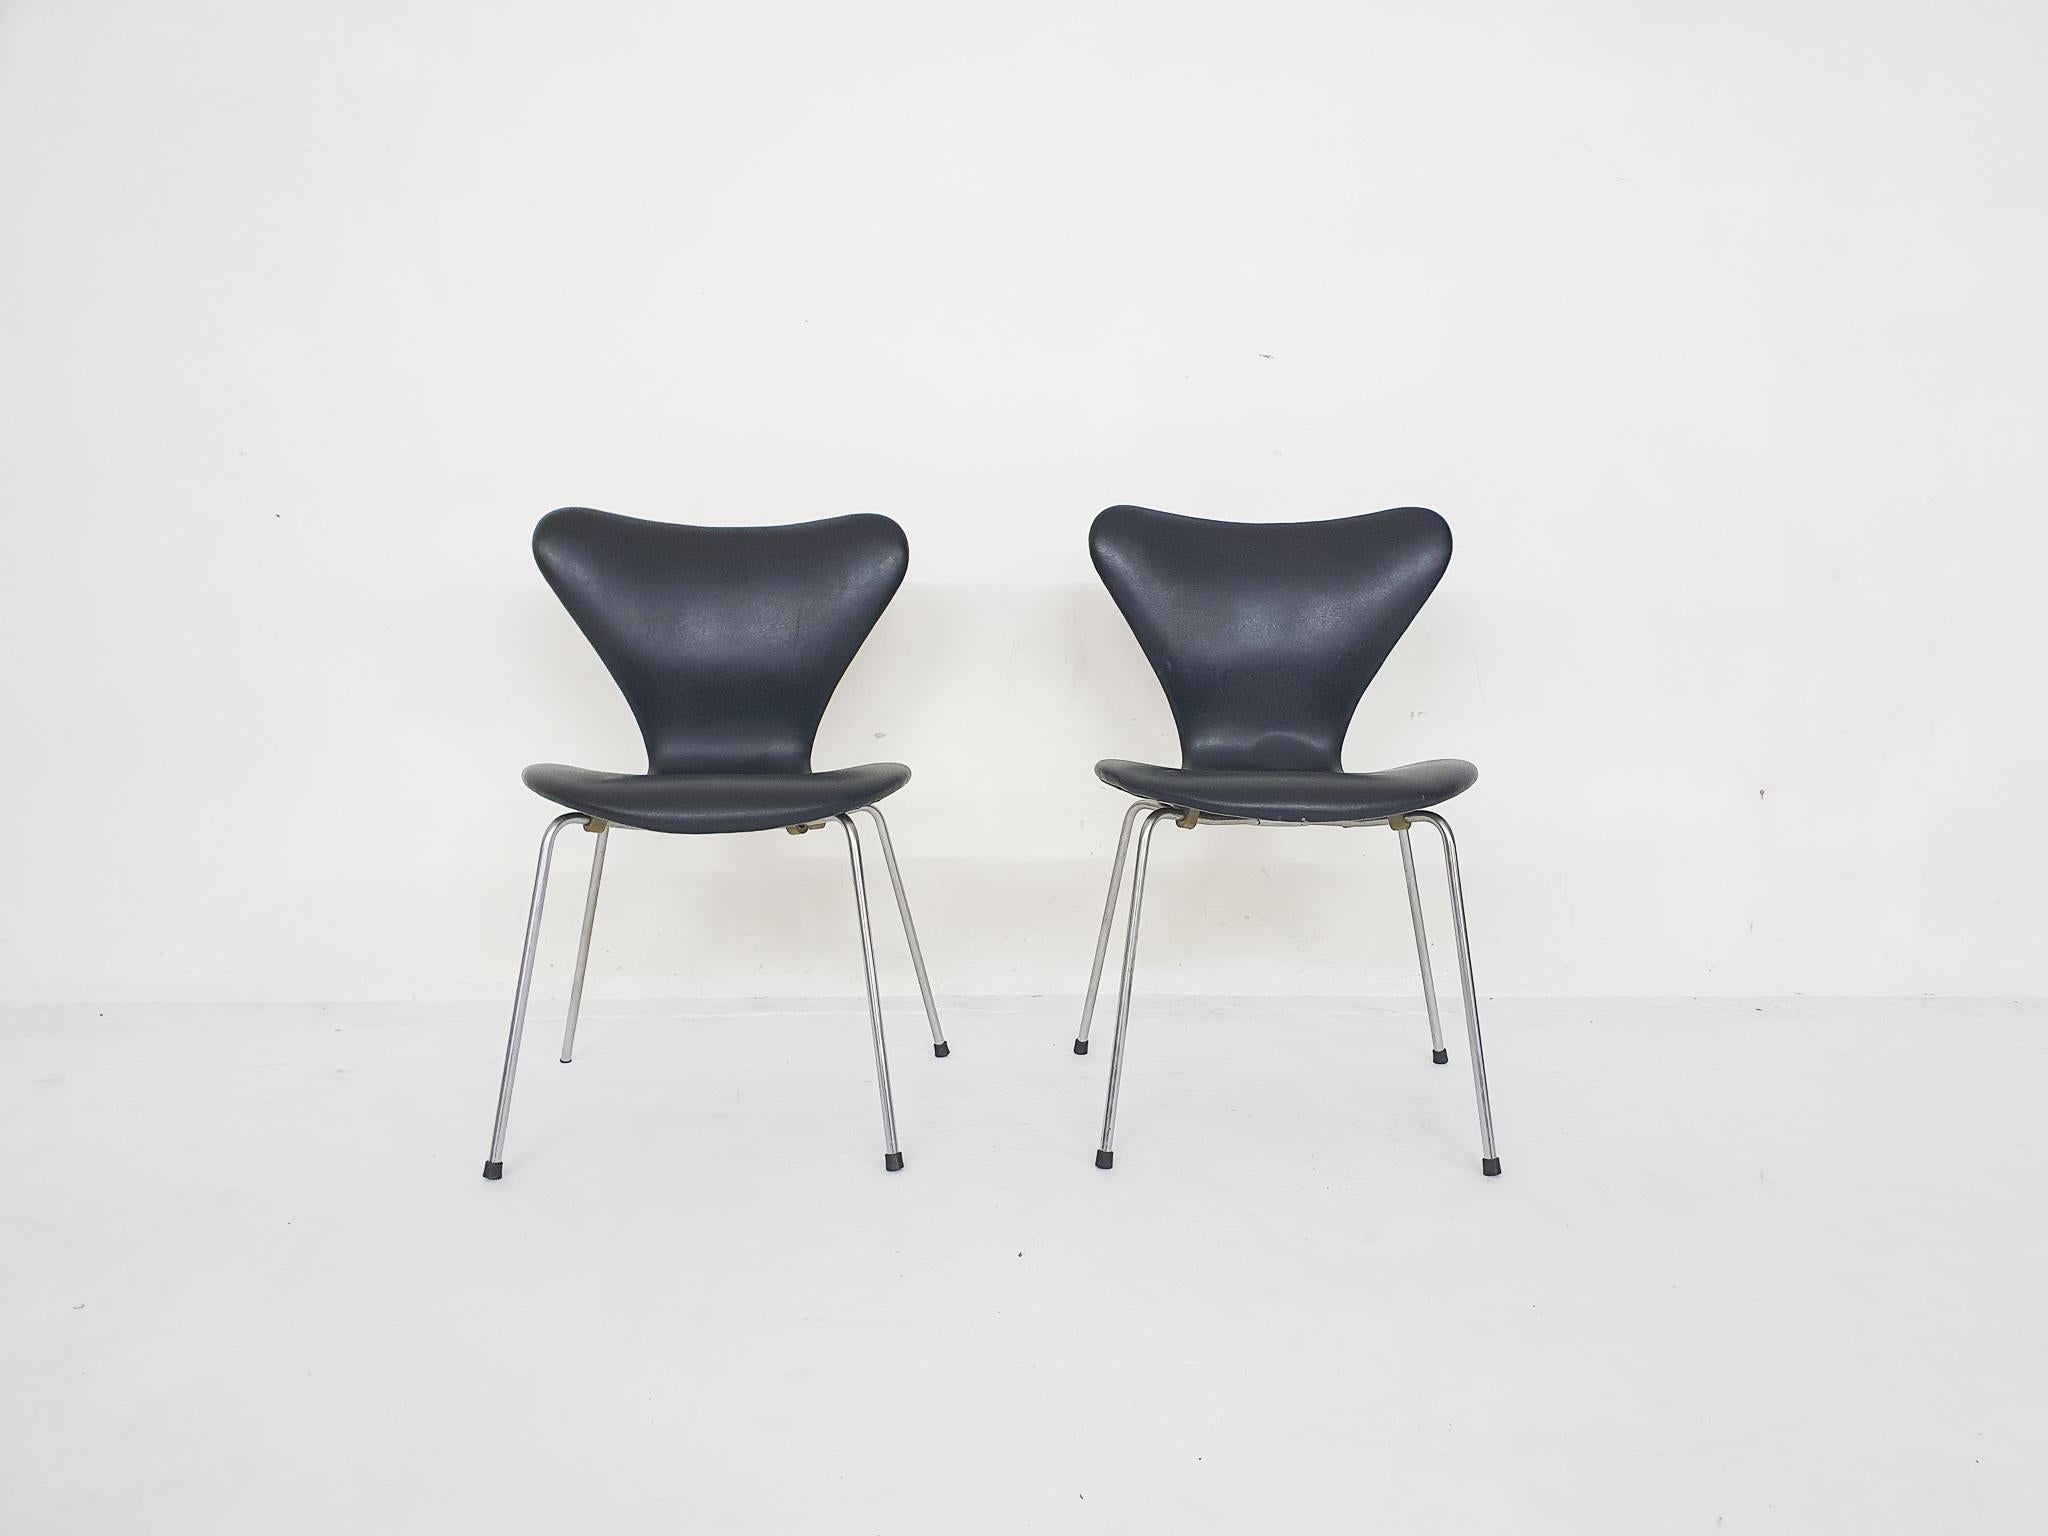 Ensemble de 2 chaises Butterfly par Arne Jacobsen pour Fritz Hansen. Structure en métal et revêtement en similicuir noir. En bon état d'origine. Quelques traces de rouille sur le châssis.

Arne Jacobsen
Arne Jacobsen était un architecte et designer